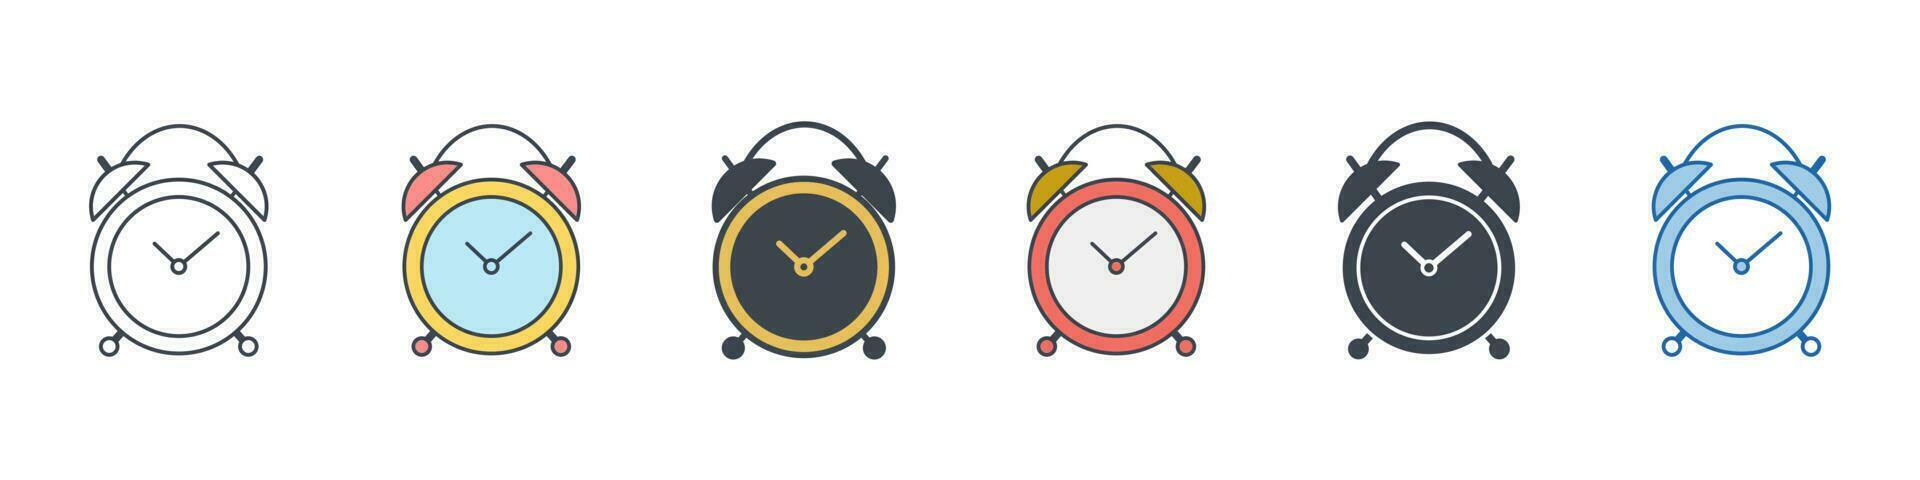 Uhr Symbol Symbol Vorlage zum Grafik und Netz Design Sammlung Logo Vektor Illustration